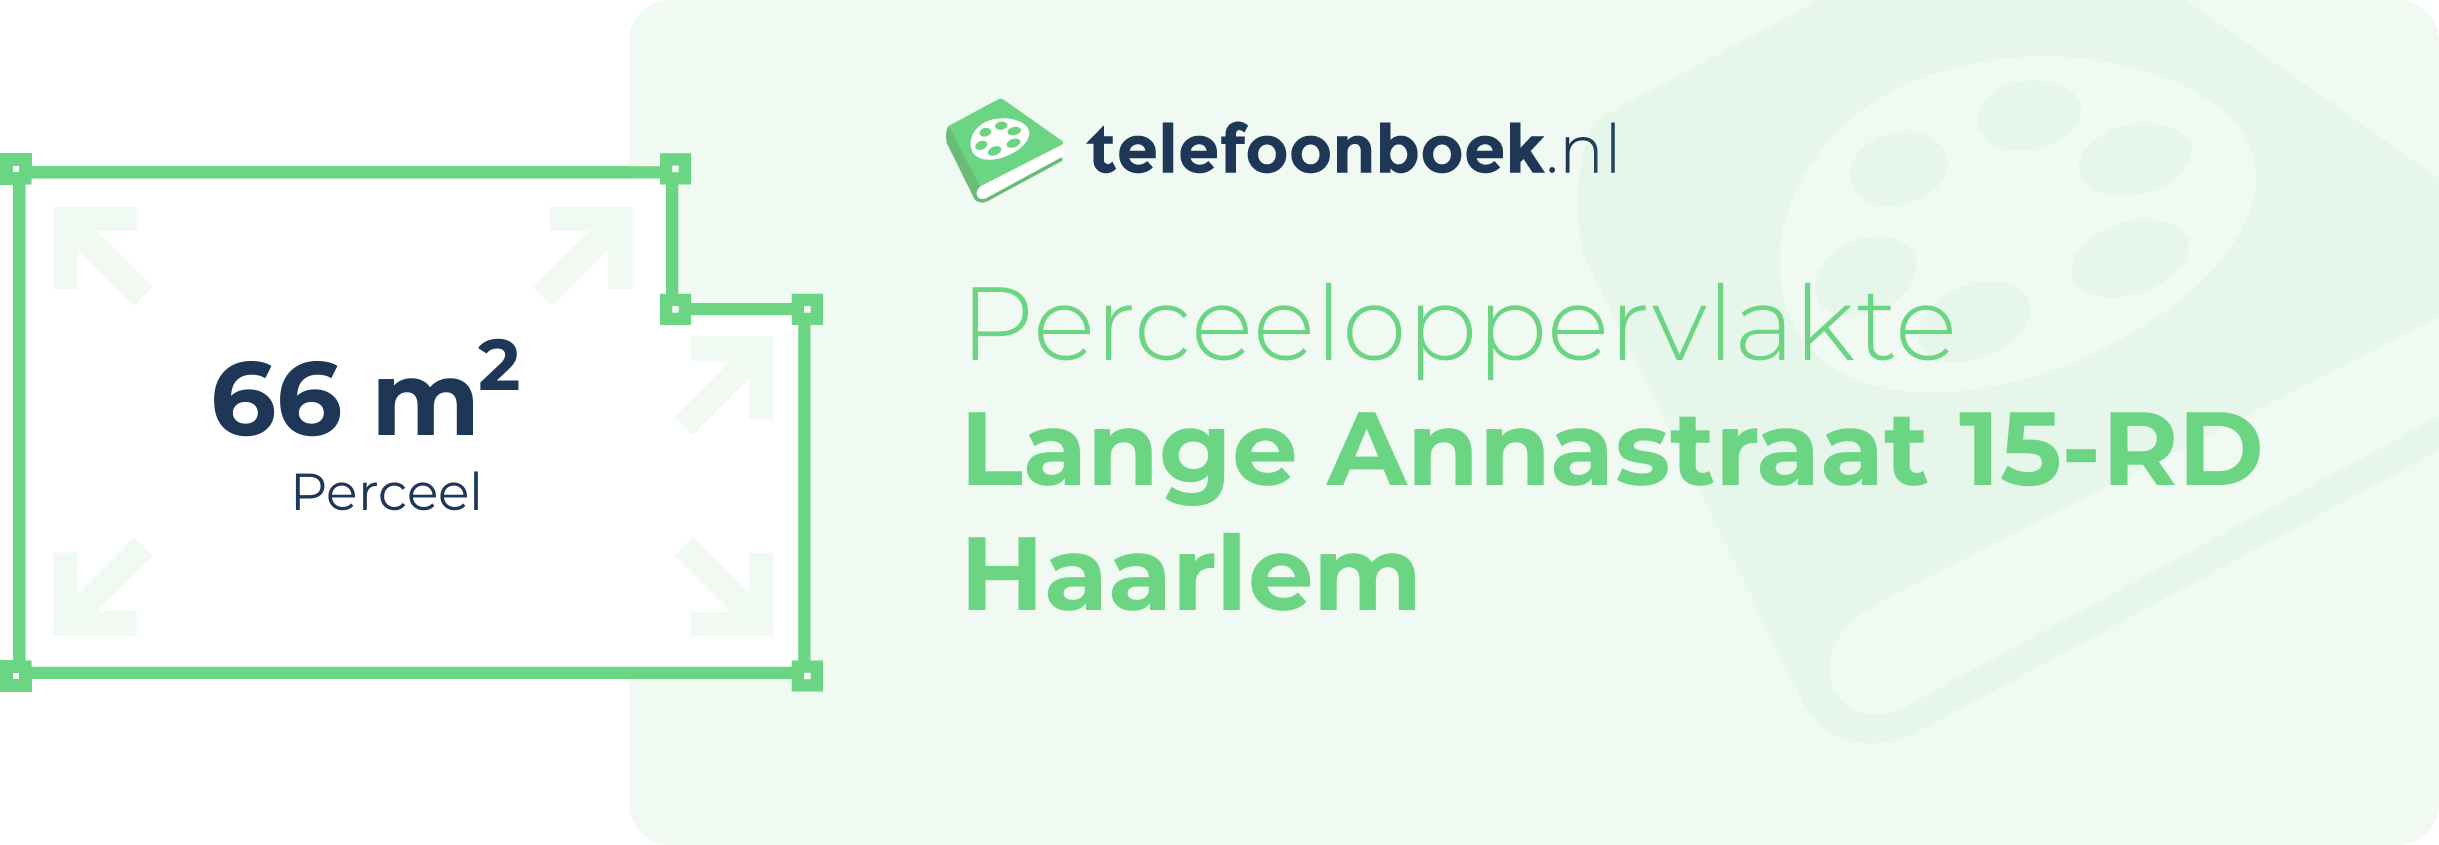 Perceeloppervlakte Lange Annastraat 15-RD Haarlem